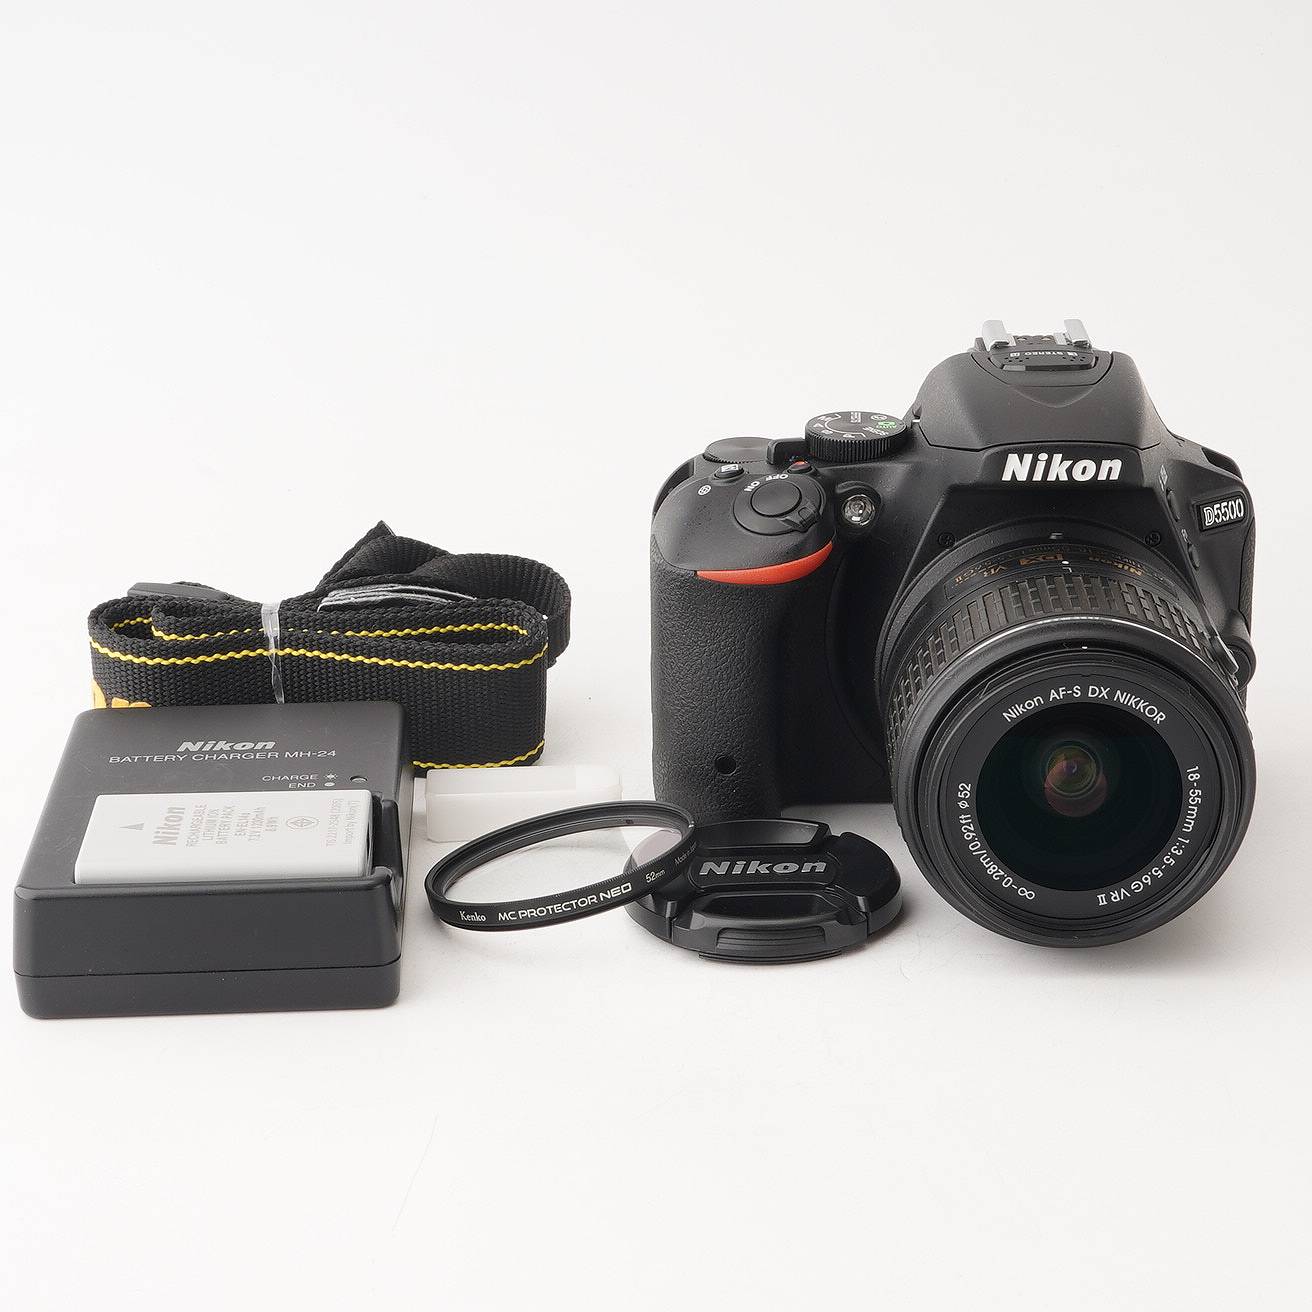 ニコン Nikon D5500 / AF-S DX NIKKOR 18-55mm F3.5-5.6G VR II